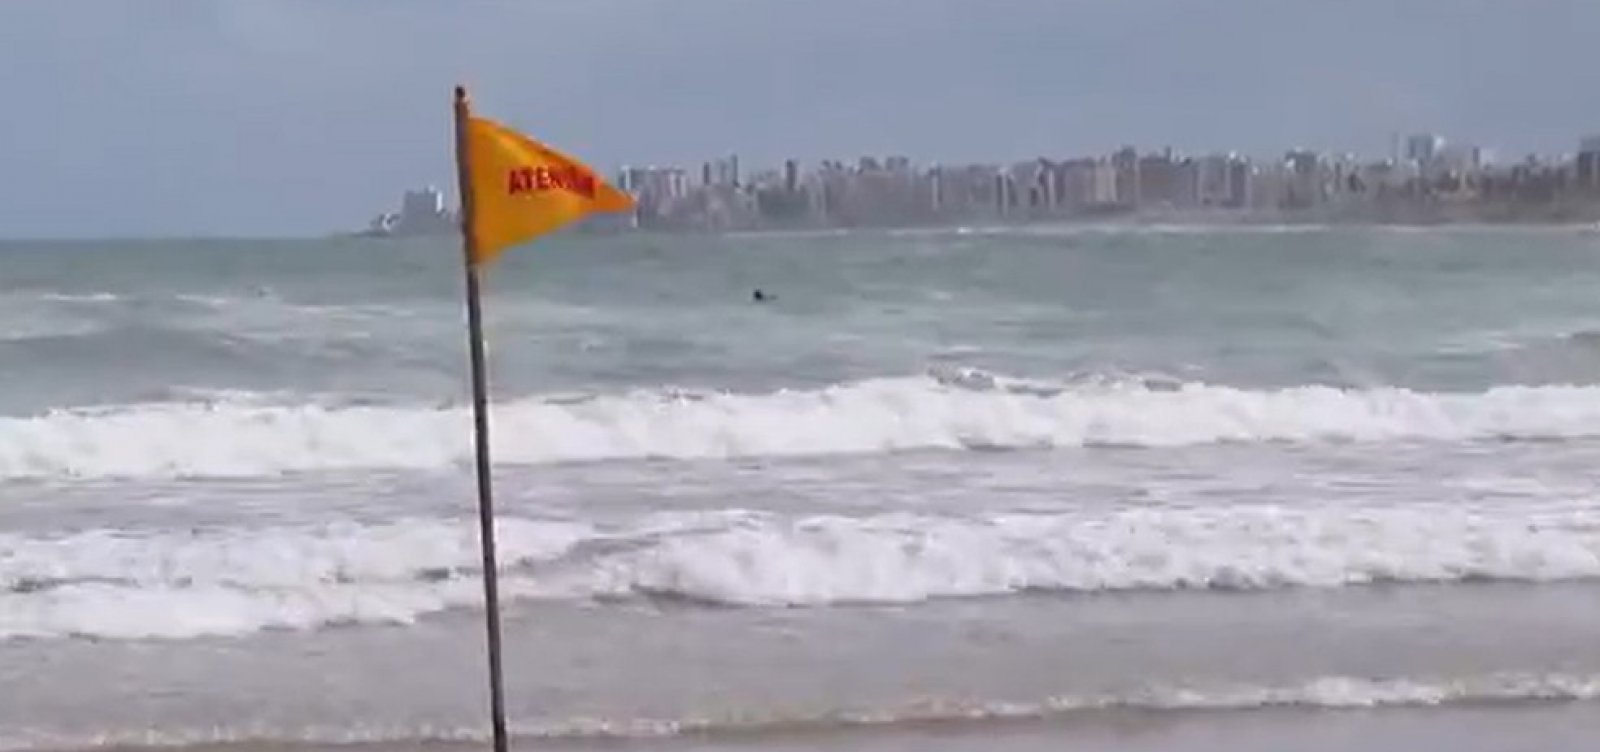 Alerta da Marinha aponta mau tempo com ventos fortes de até 60 km/h no litoral da Bahia